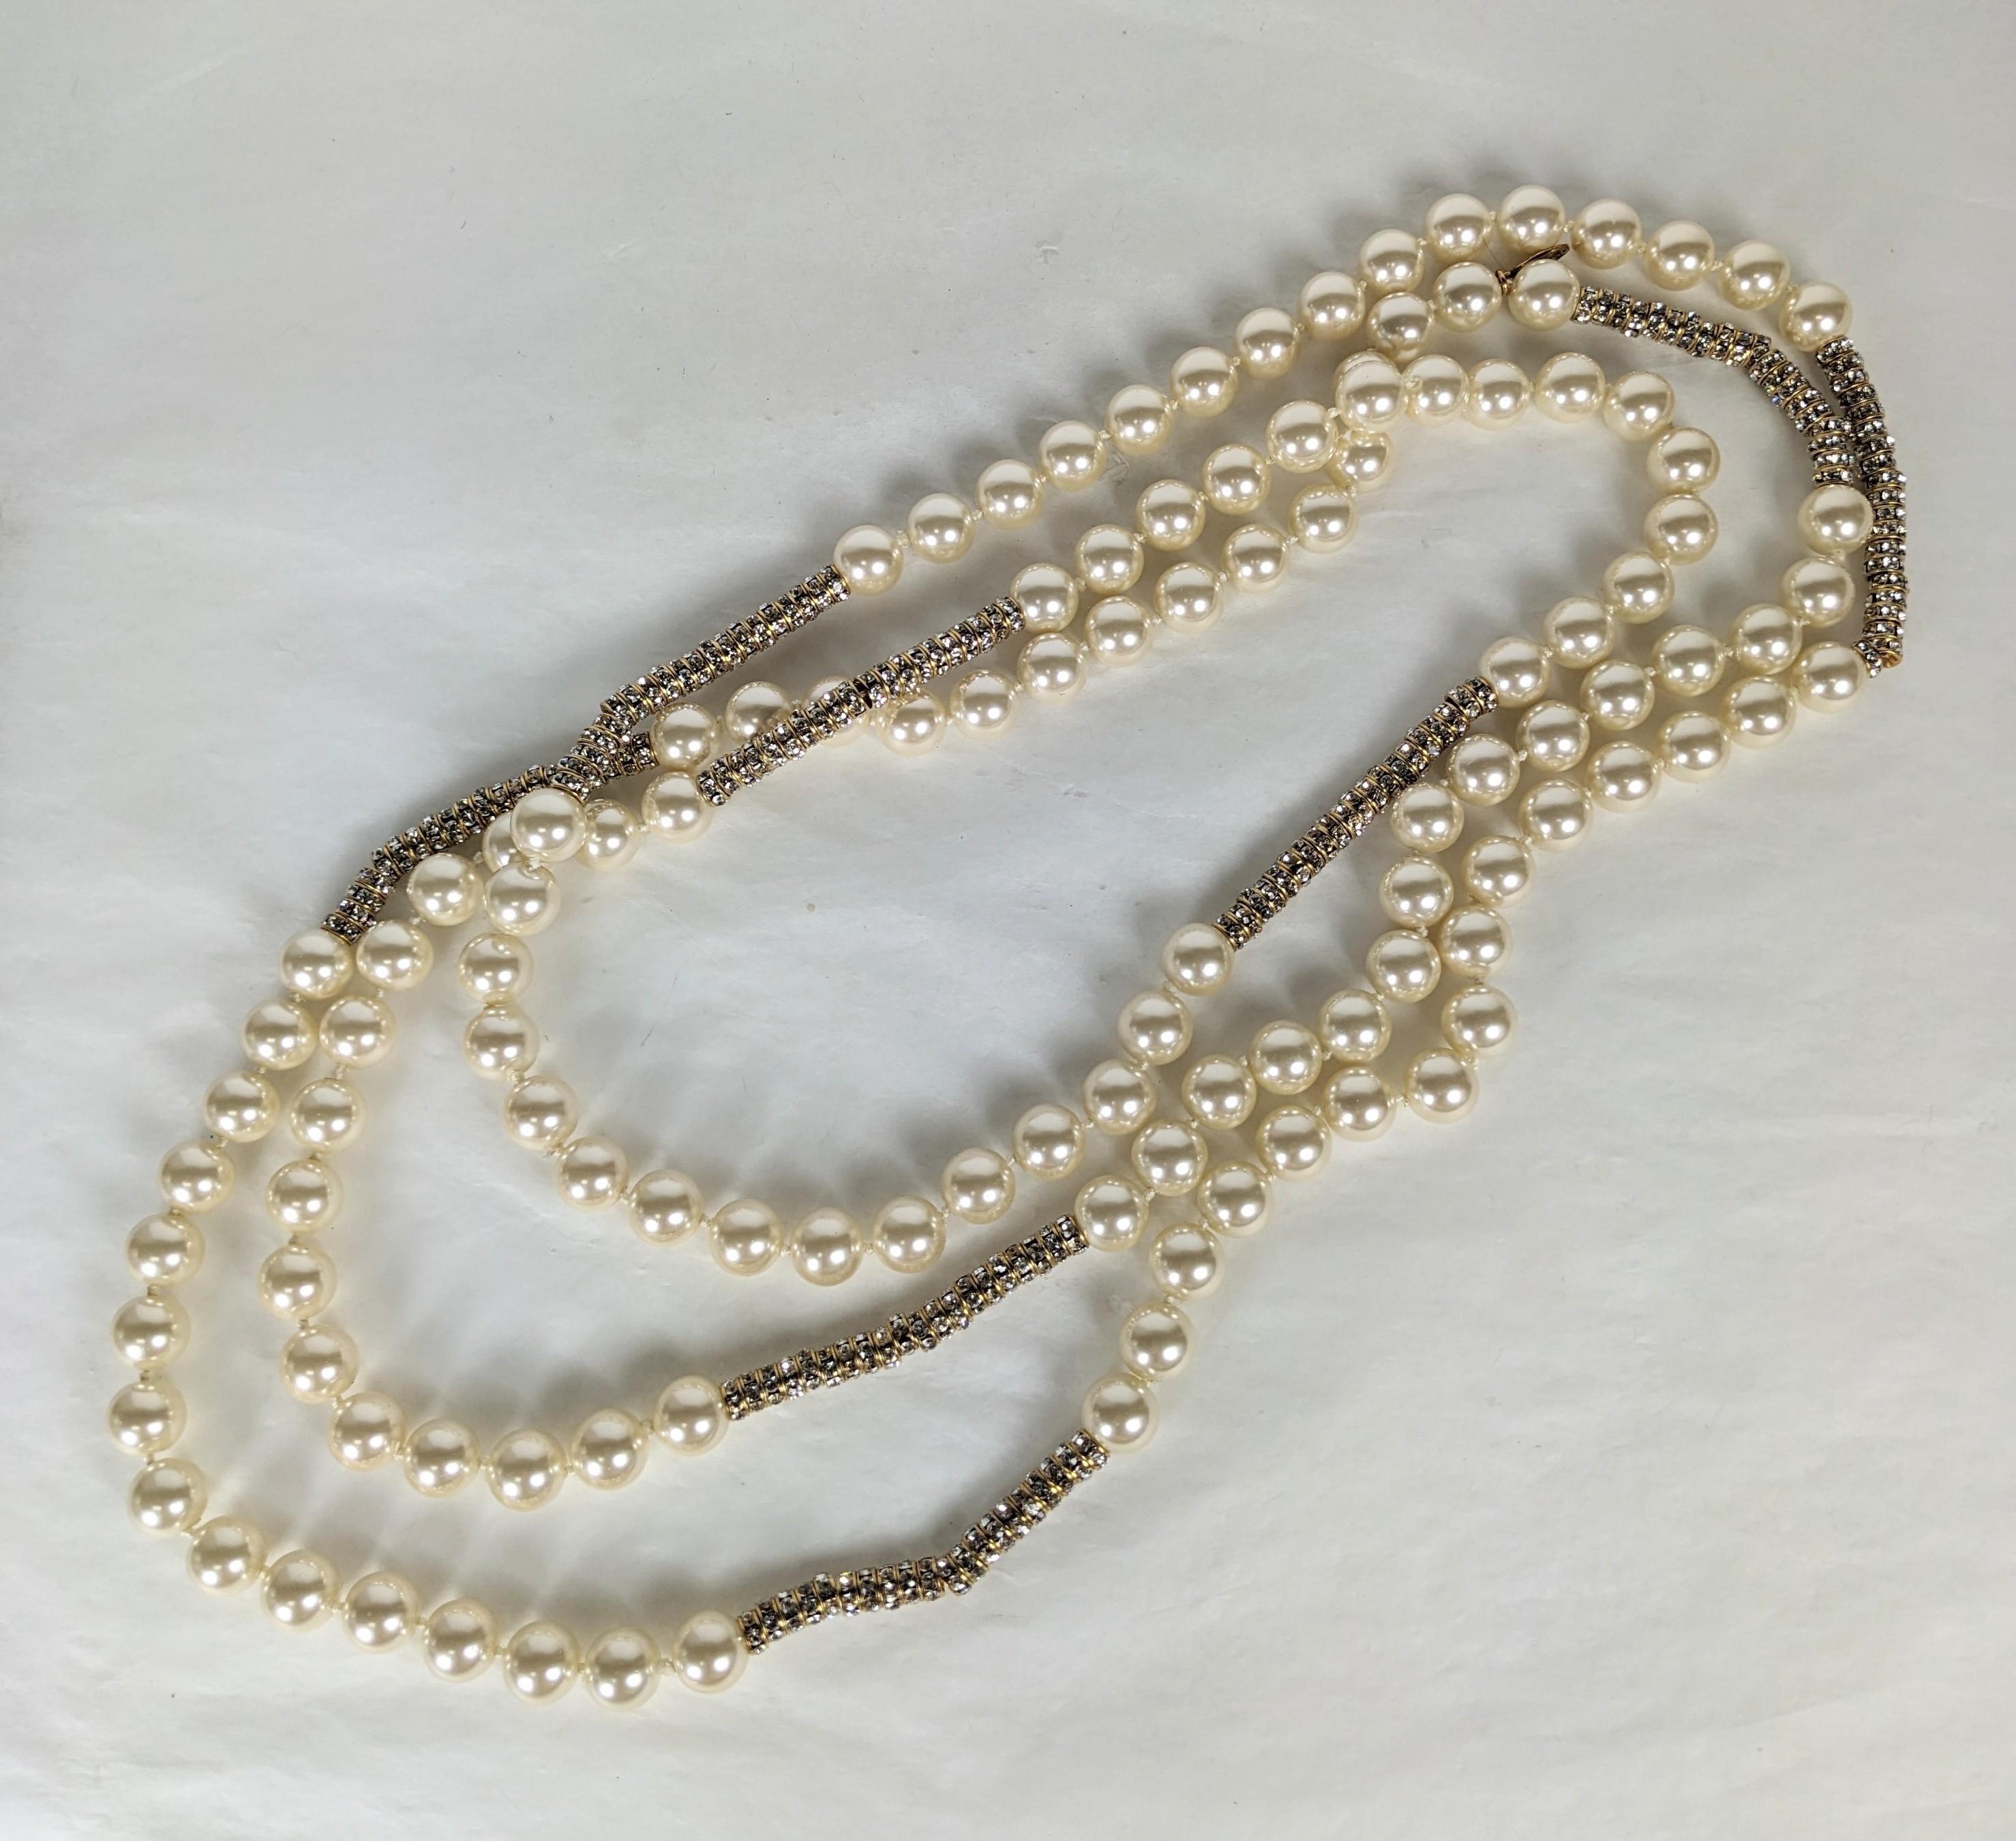 Super seltene und vielseitige Chanel Endlos Perle und Kristall Rondell Halskette. Unglaublich lang und so vielseitig zu wickeln oder einzeln zu tragen. Handgeknüpfte Kunstperlen mit vergoldeten Bullion-Kappen mit Hunderten von kristallbesetzten